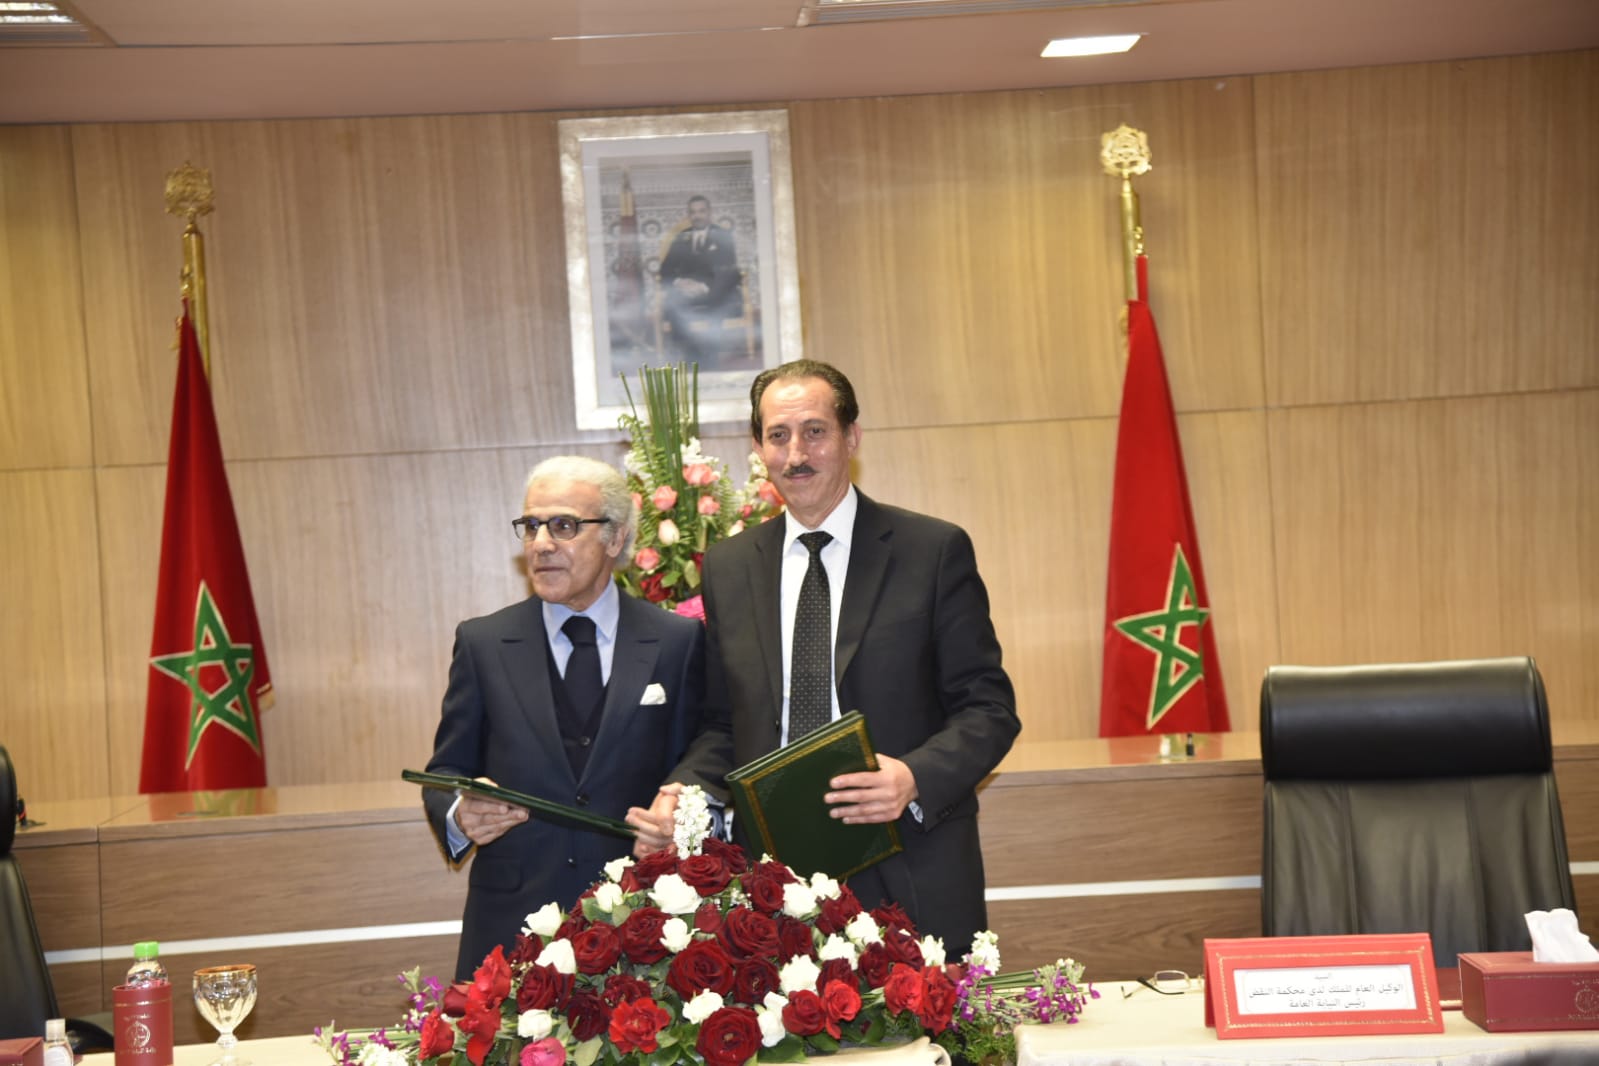 كلمة السيد مولاي الحسن الداكي الوكيل العام للملك رئيس النيابة العامة بمناسبة توقيع اتفاقية الشراكة والتعاون بين رئاسة النيابة العامة وبنك المغرب. 